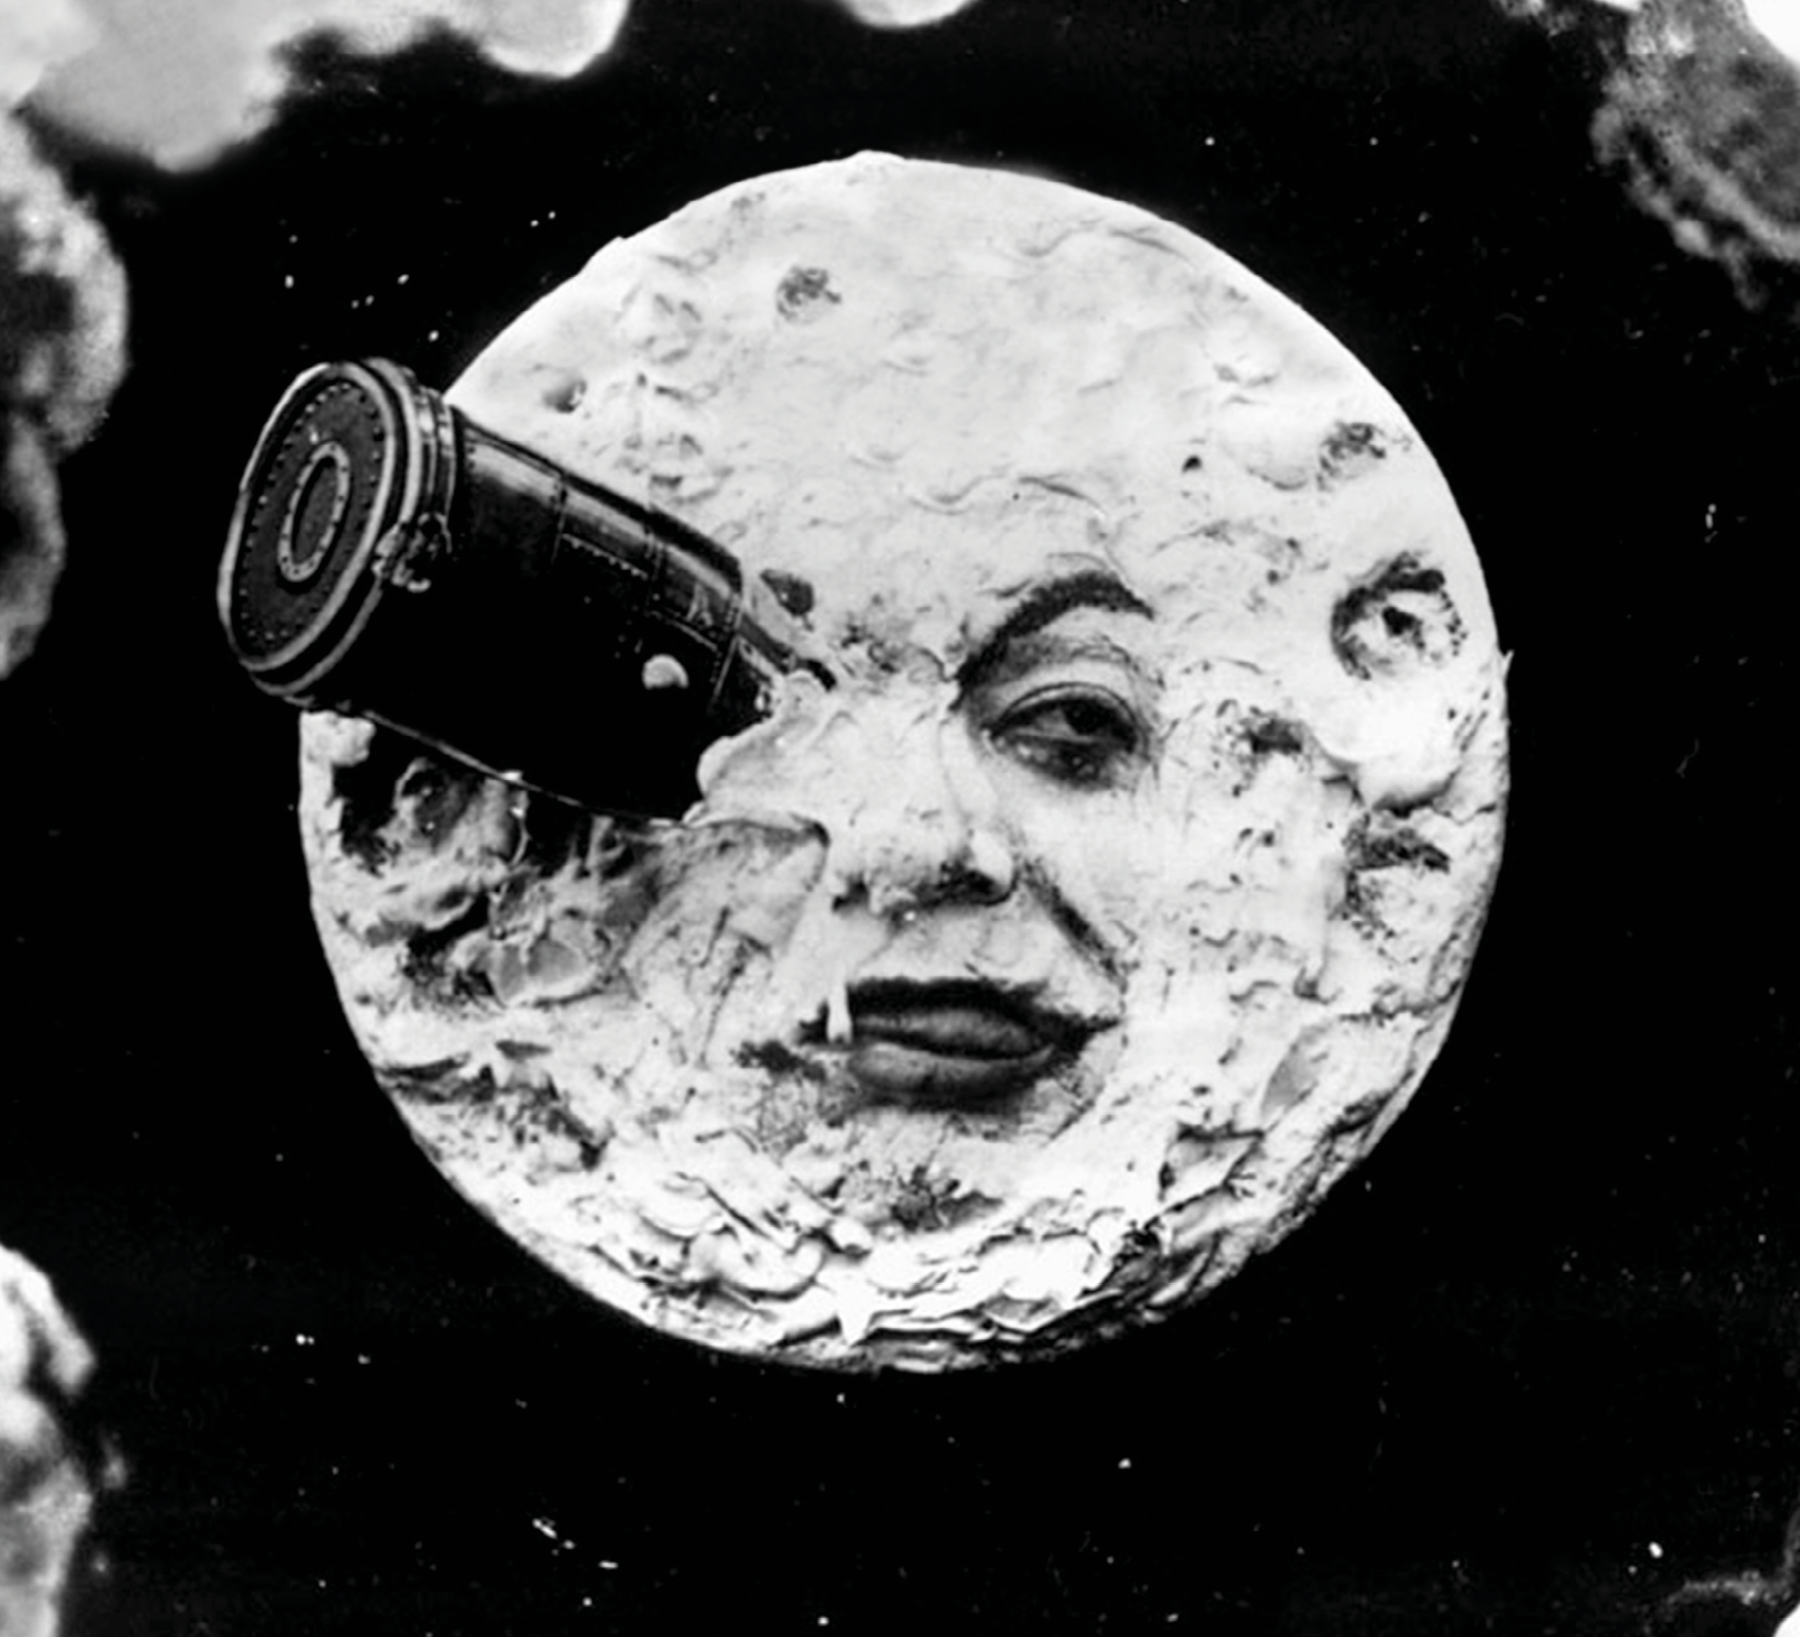 Fotograma. Imagem em preto e branco de filme cinematográfico antigo em que a Lua apresenta um rosto humano com expressão aborrecida porque está com uma cápsula espacial entalada dentro de um dos olhos.